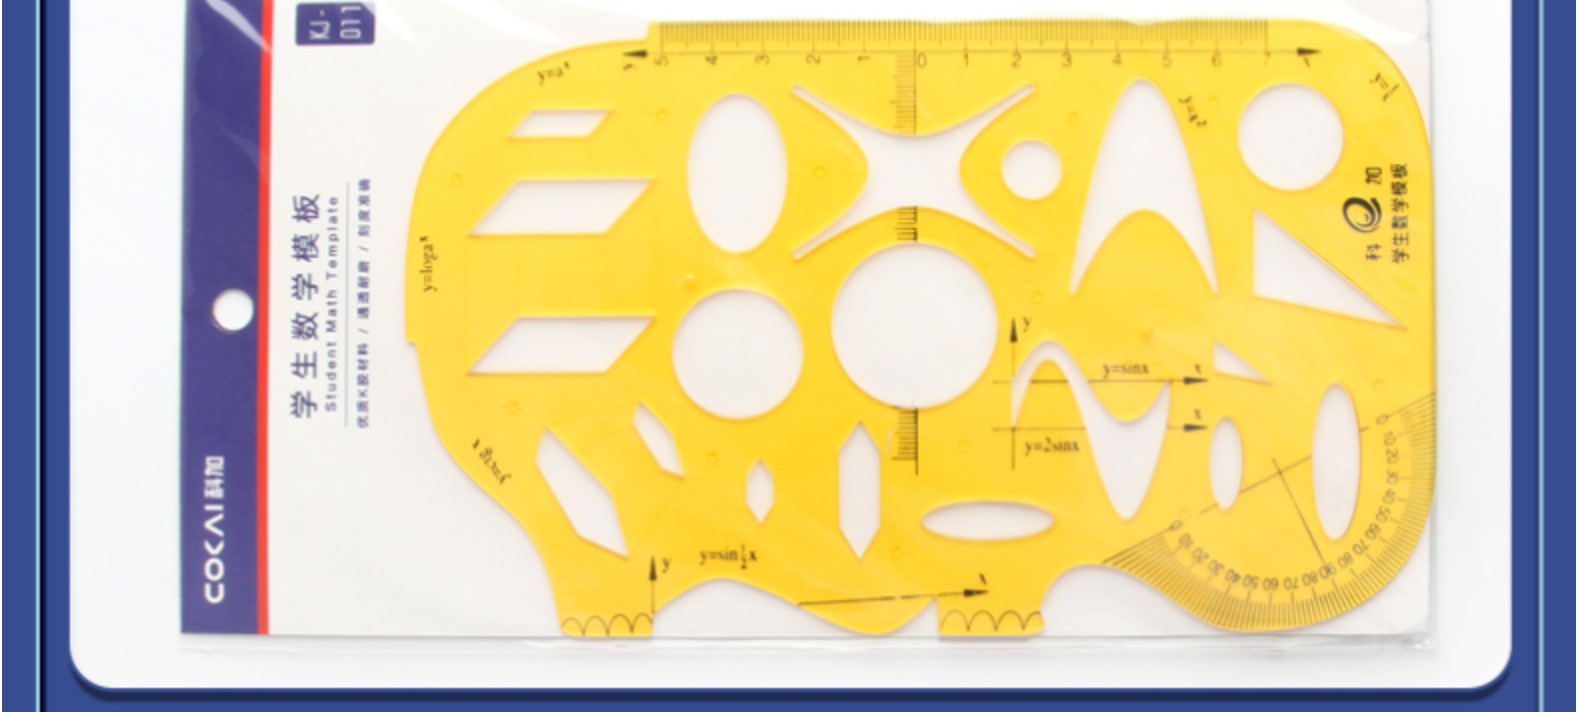 专用绘图模板化学模版设计方案作图模板尺作图制图工具学生文具详情53